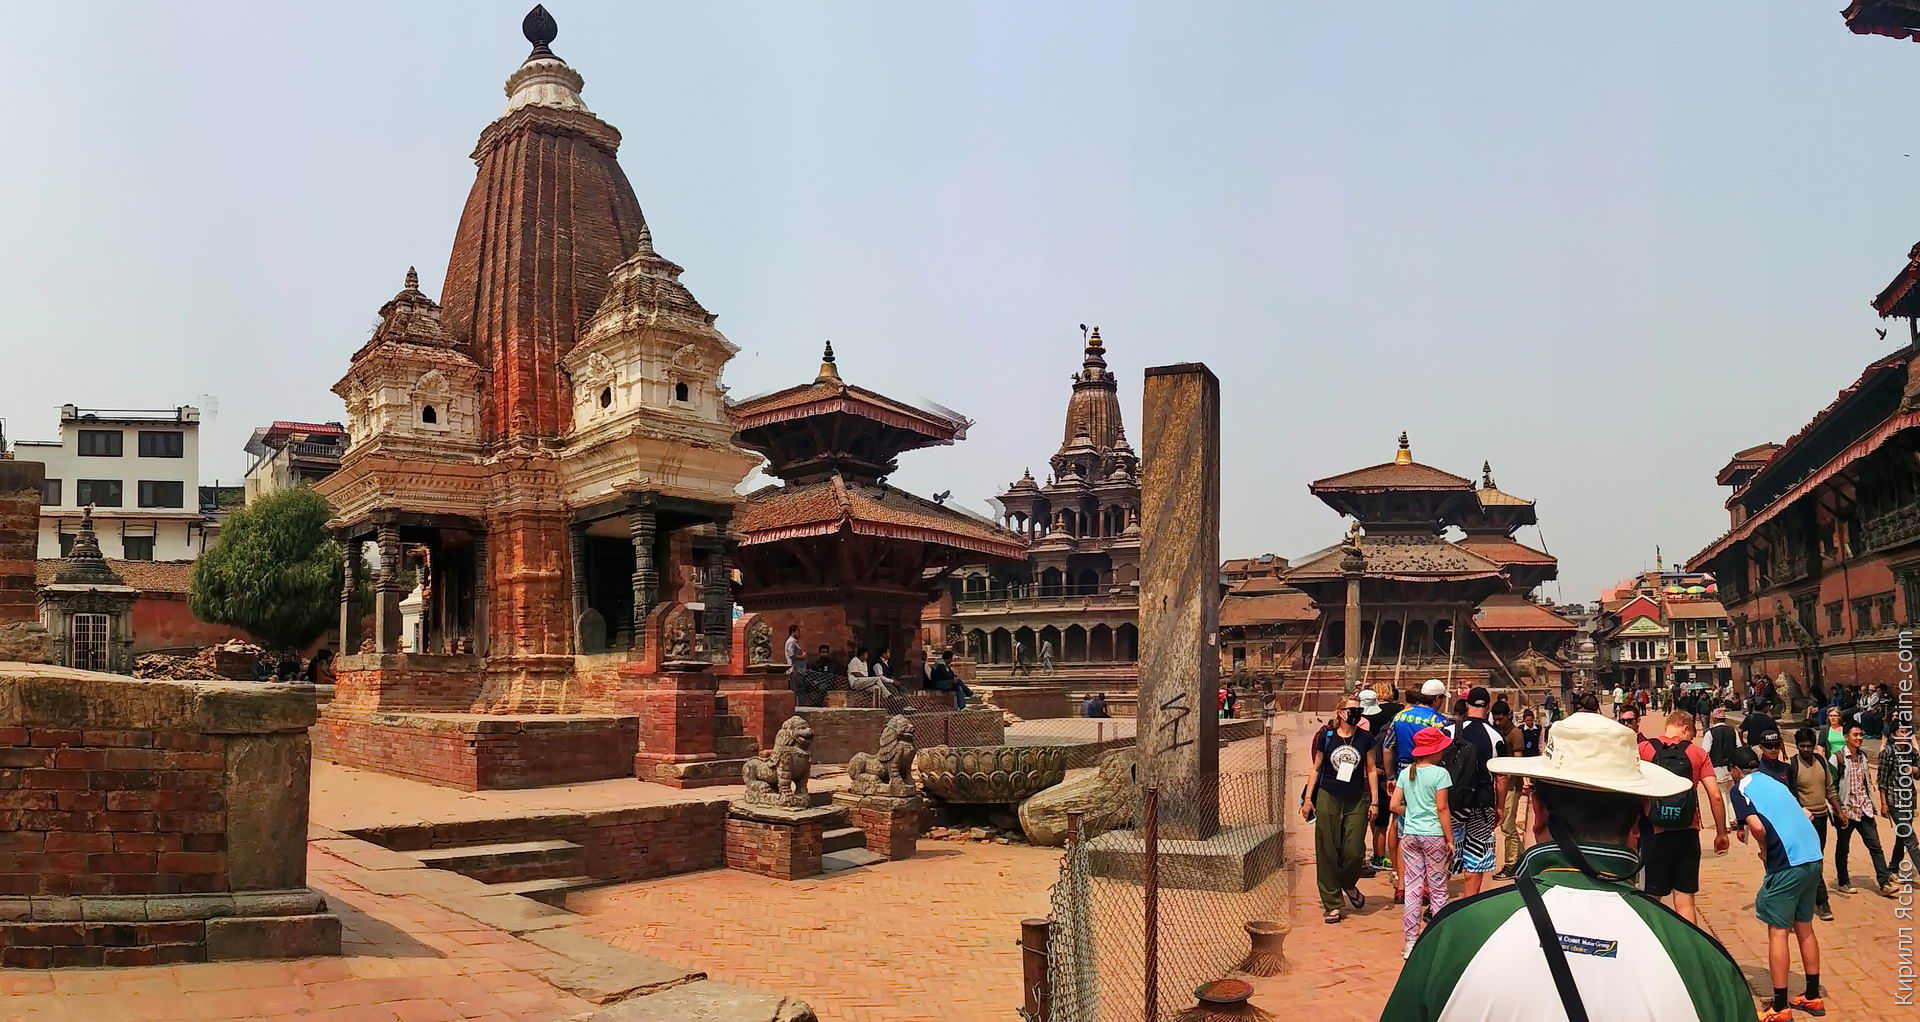 Какого государства катманду. Храм любви в Катманду. Непал Катманду архитектура храм обезьян. Катманду после землетрясения. Версаль Катманду.